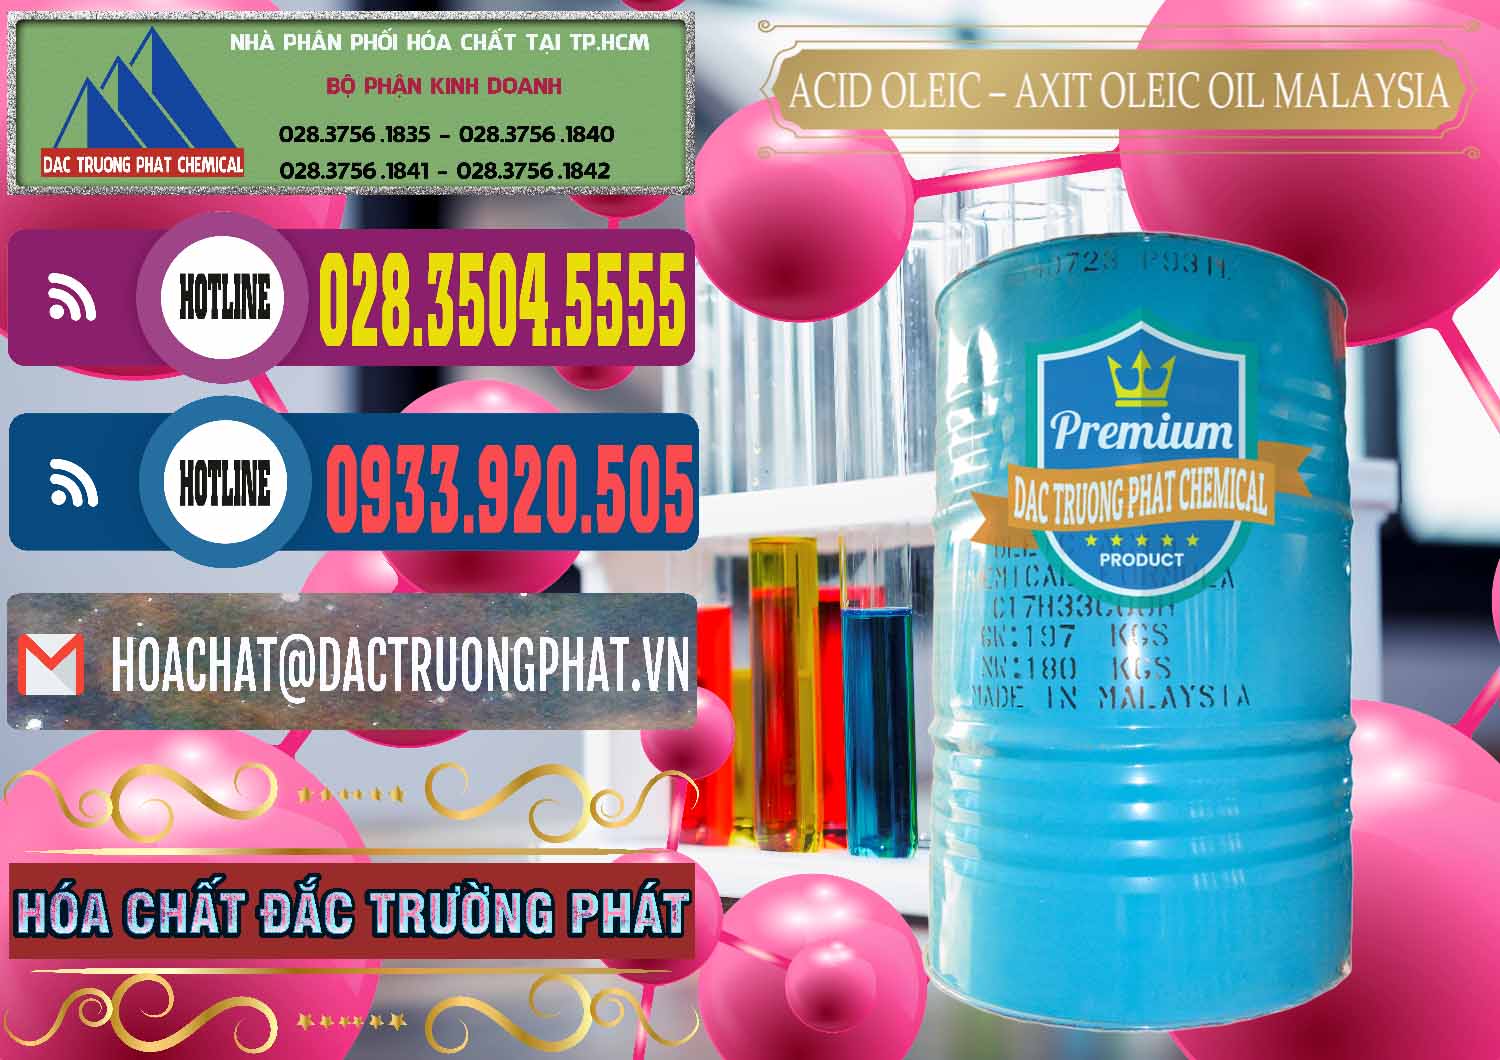 Cty chuyên cung ứng - bán Acid Oleic – Axit Oleic Oil Malaysia - 0013 - Công ty chuyên bán & cung cấp hóa chất tại TP.HCM - muabanhoachat.com.vn